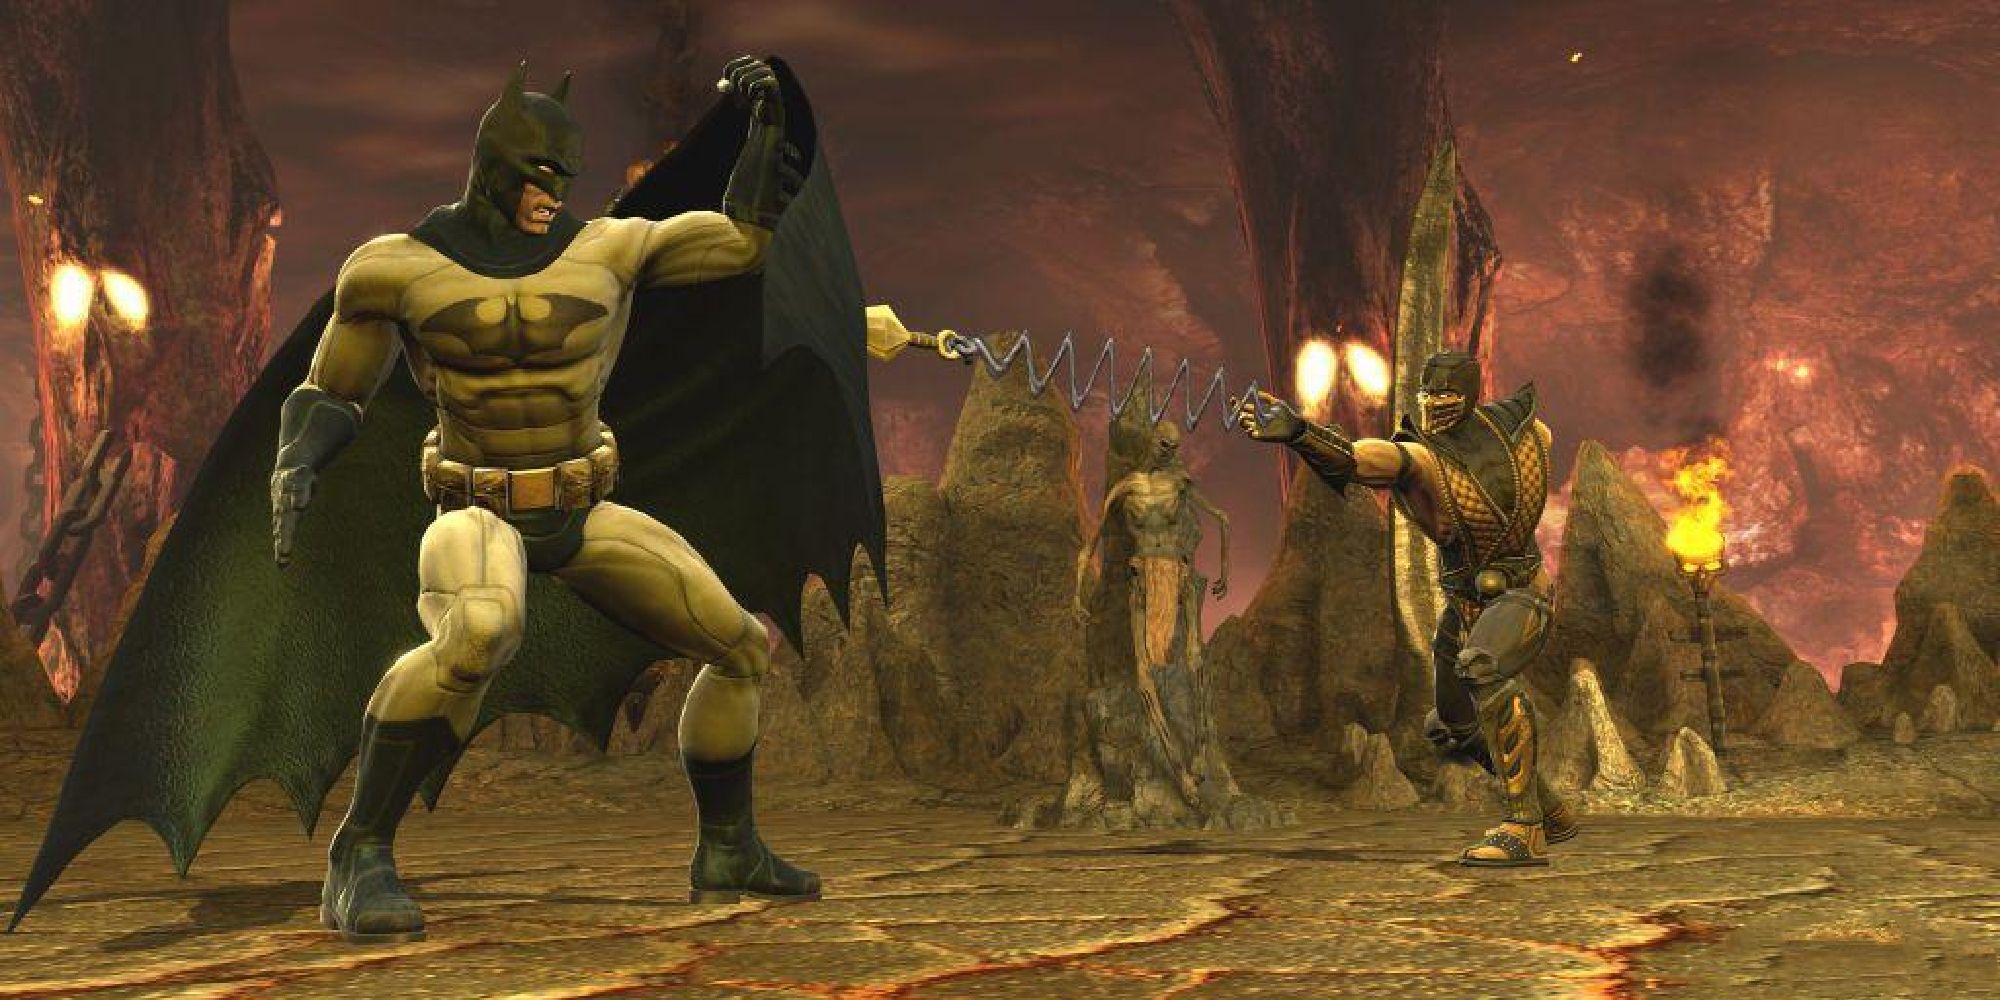 Mortal Kombat X vs. Injustice 2  Vs. Polls – Narik Chase Studios